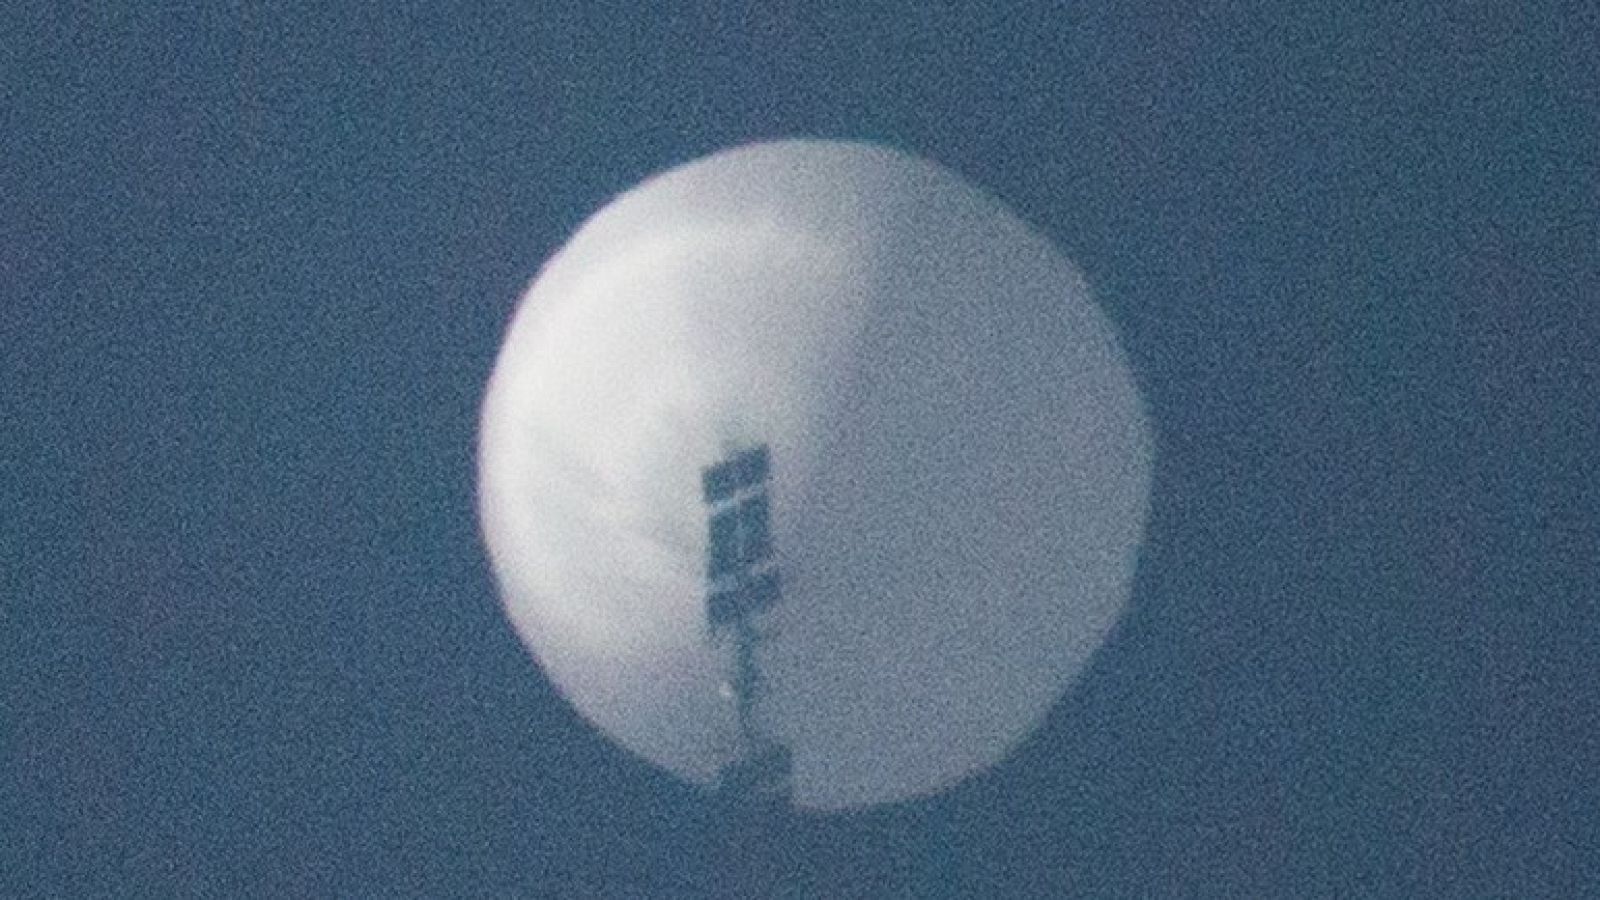 Imagen del supuesto globo aerostático espía detectado por Estados Unidos.